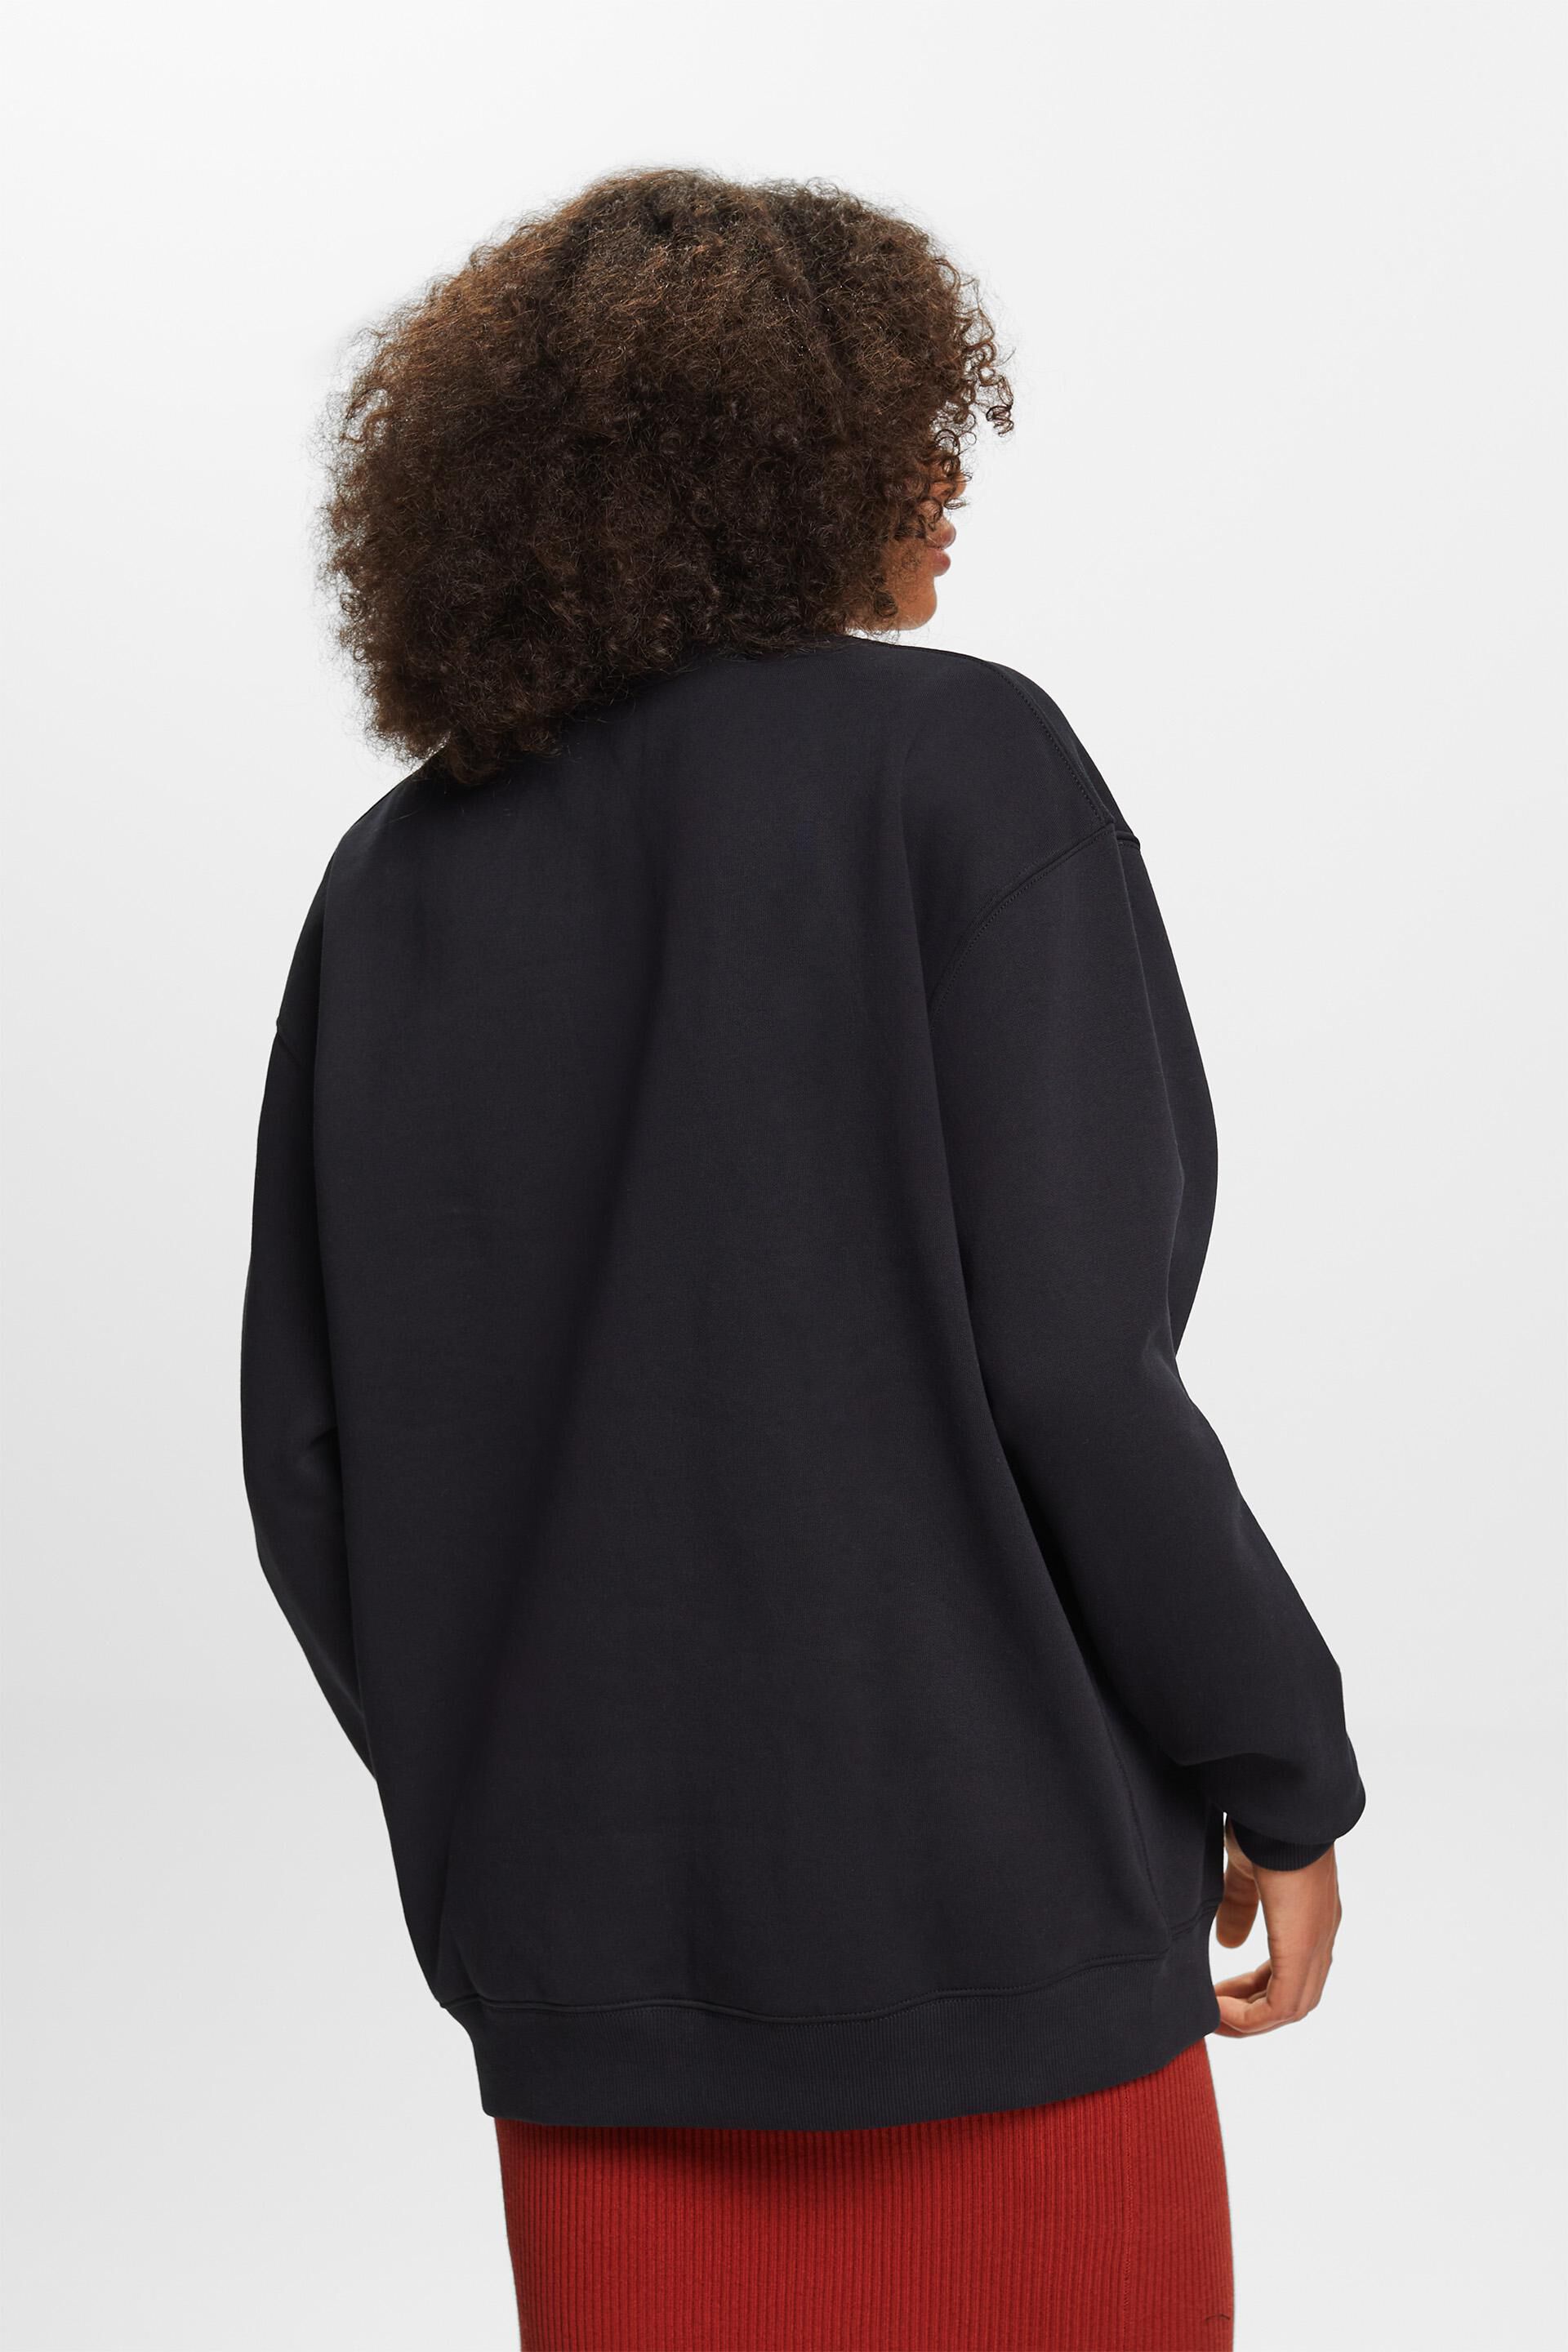 Esprit Pullover-Sweatshirt Baumwollmischung aus